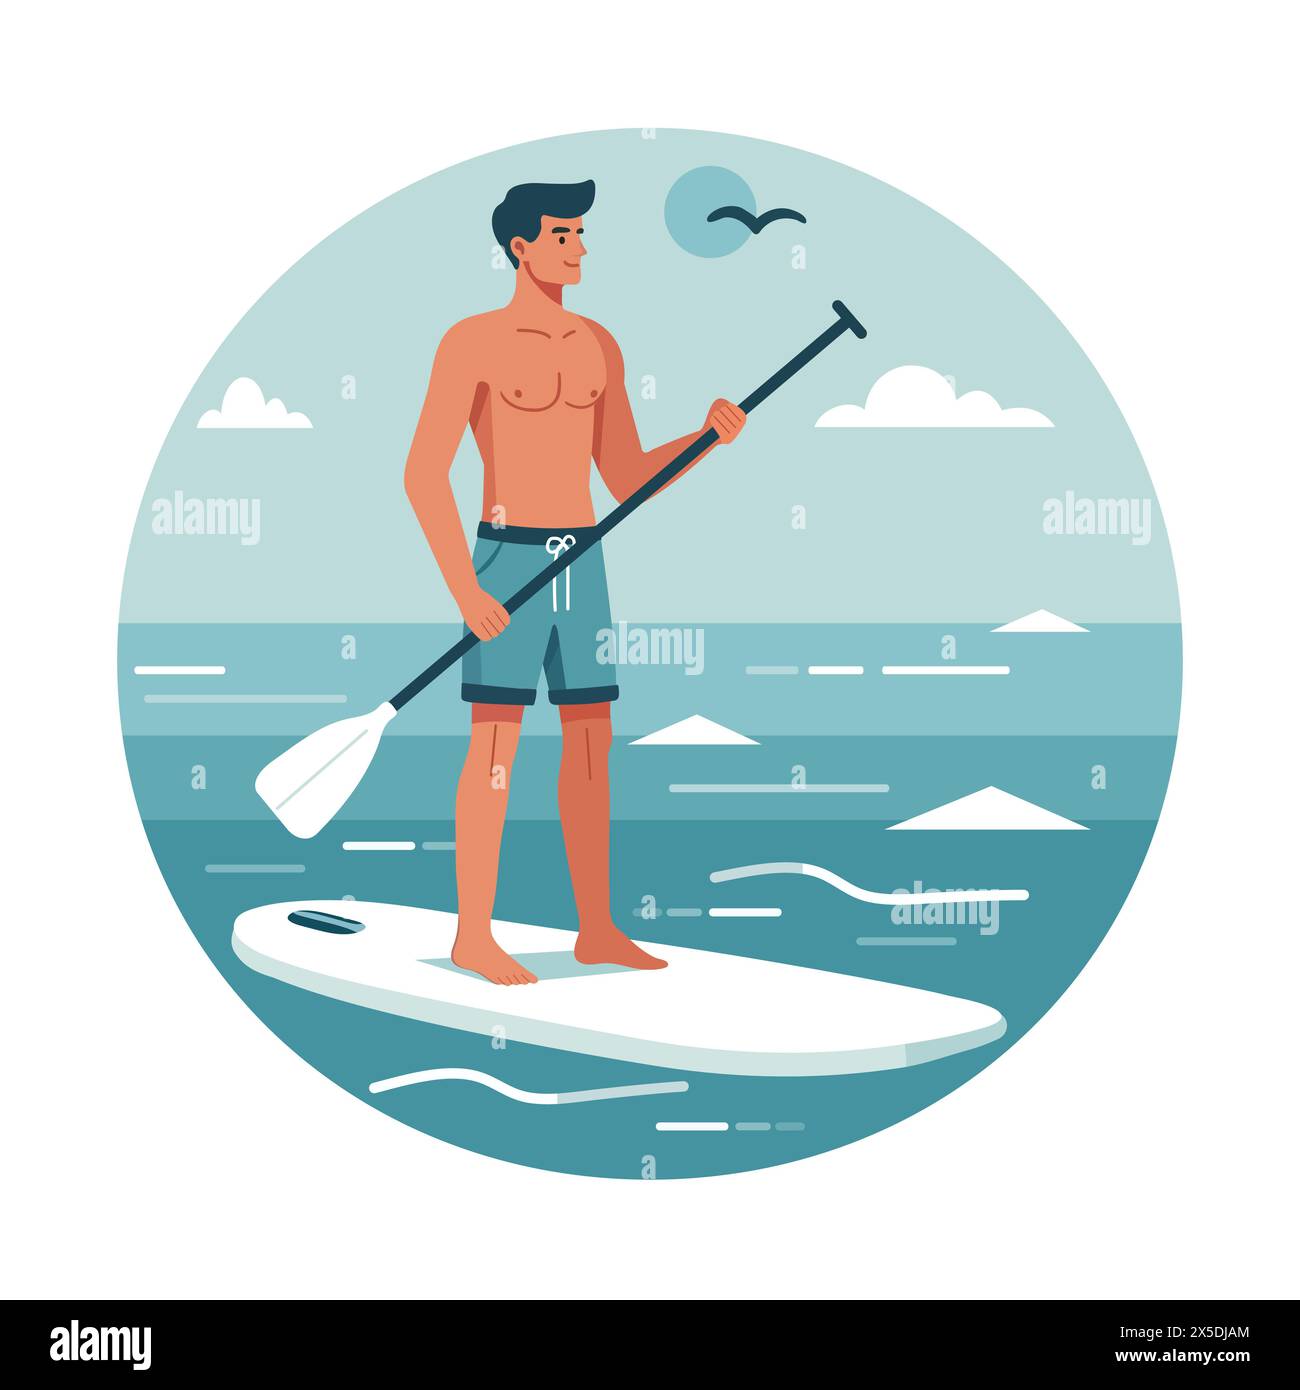 Vektor-Illustration glücklicher athletischer Mann hält Paddel in seinen Händen und steht auf Sup Board. Sommer aktive Erholung auf dem Meer. Stehpaddelbrett. SUP. S Stock Vektor